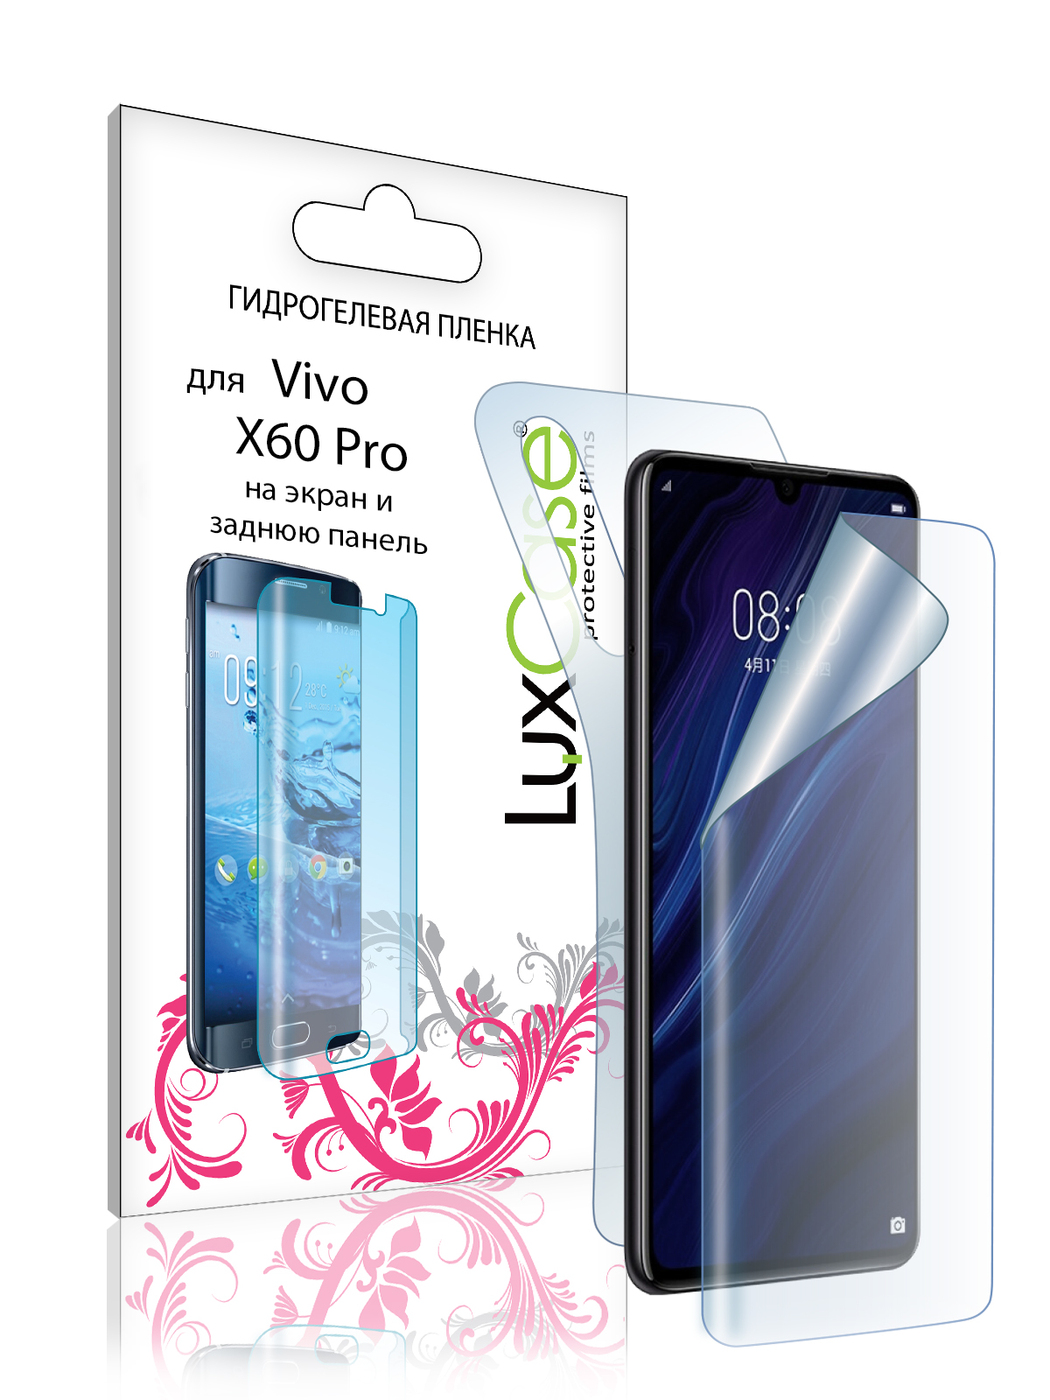 Пленка гидрогелевая LuxCase для Vivo X60 Pro Front and Back 0.14mm Transparent 86003 силиконовый чехол на vivo x60 pro одежда для такс для виво икс 60 про